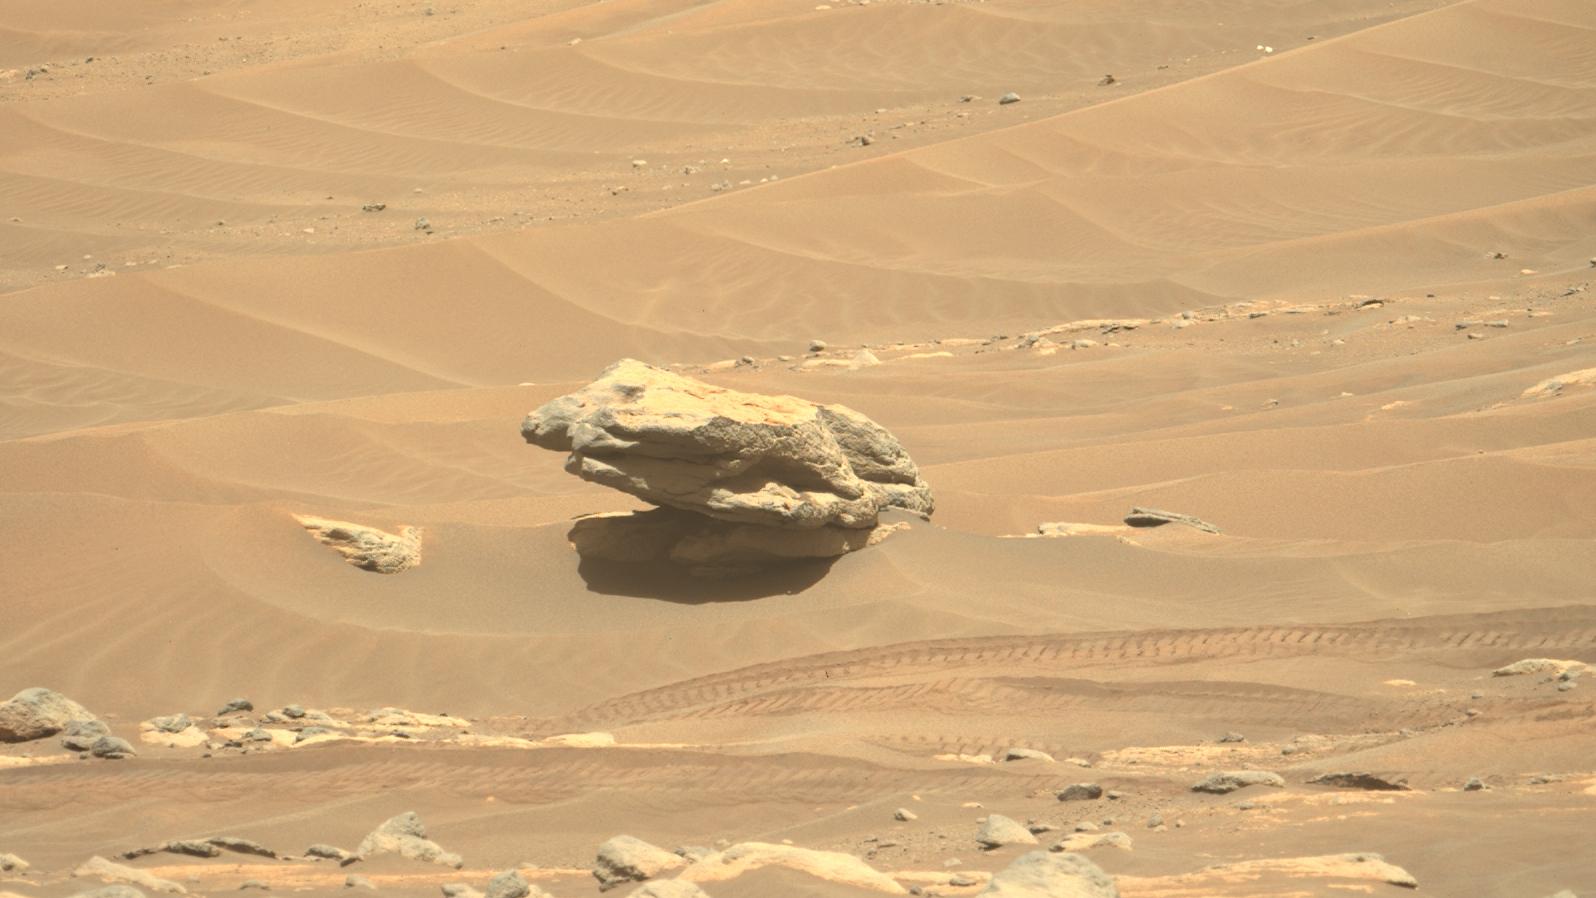 Mars-Rover entdeckt Stein, der wie ein Frosch aussieht thumbnail